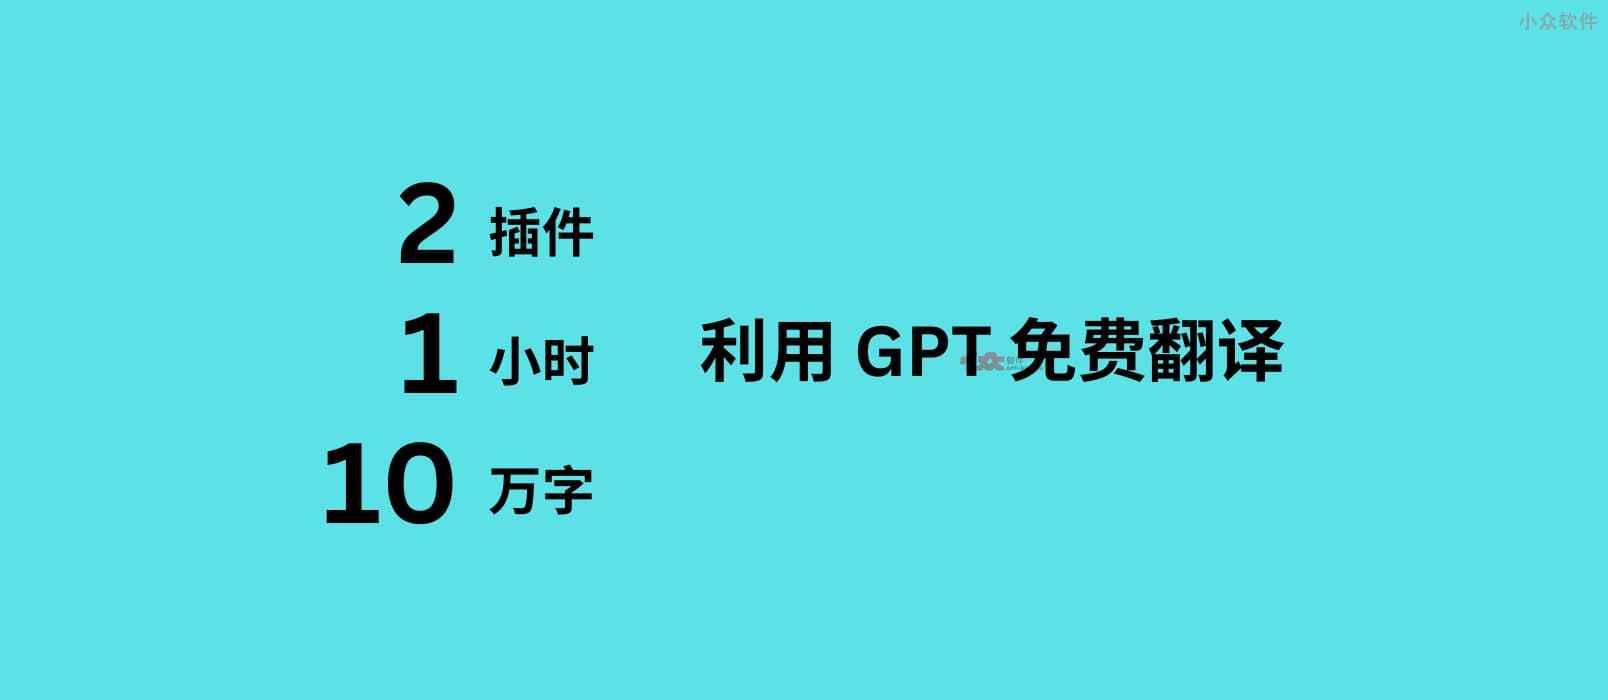 2 款 GPT 插件，不花钱，1 小时免费翻译 10 万字，导出成册